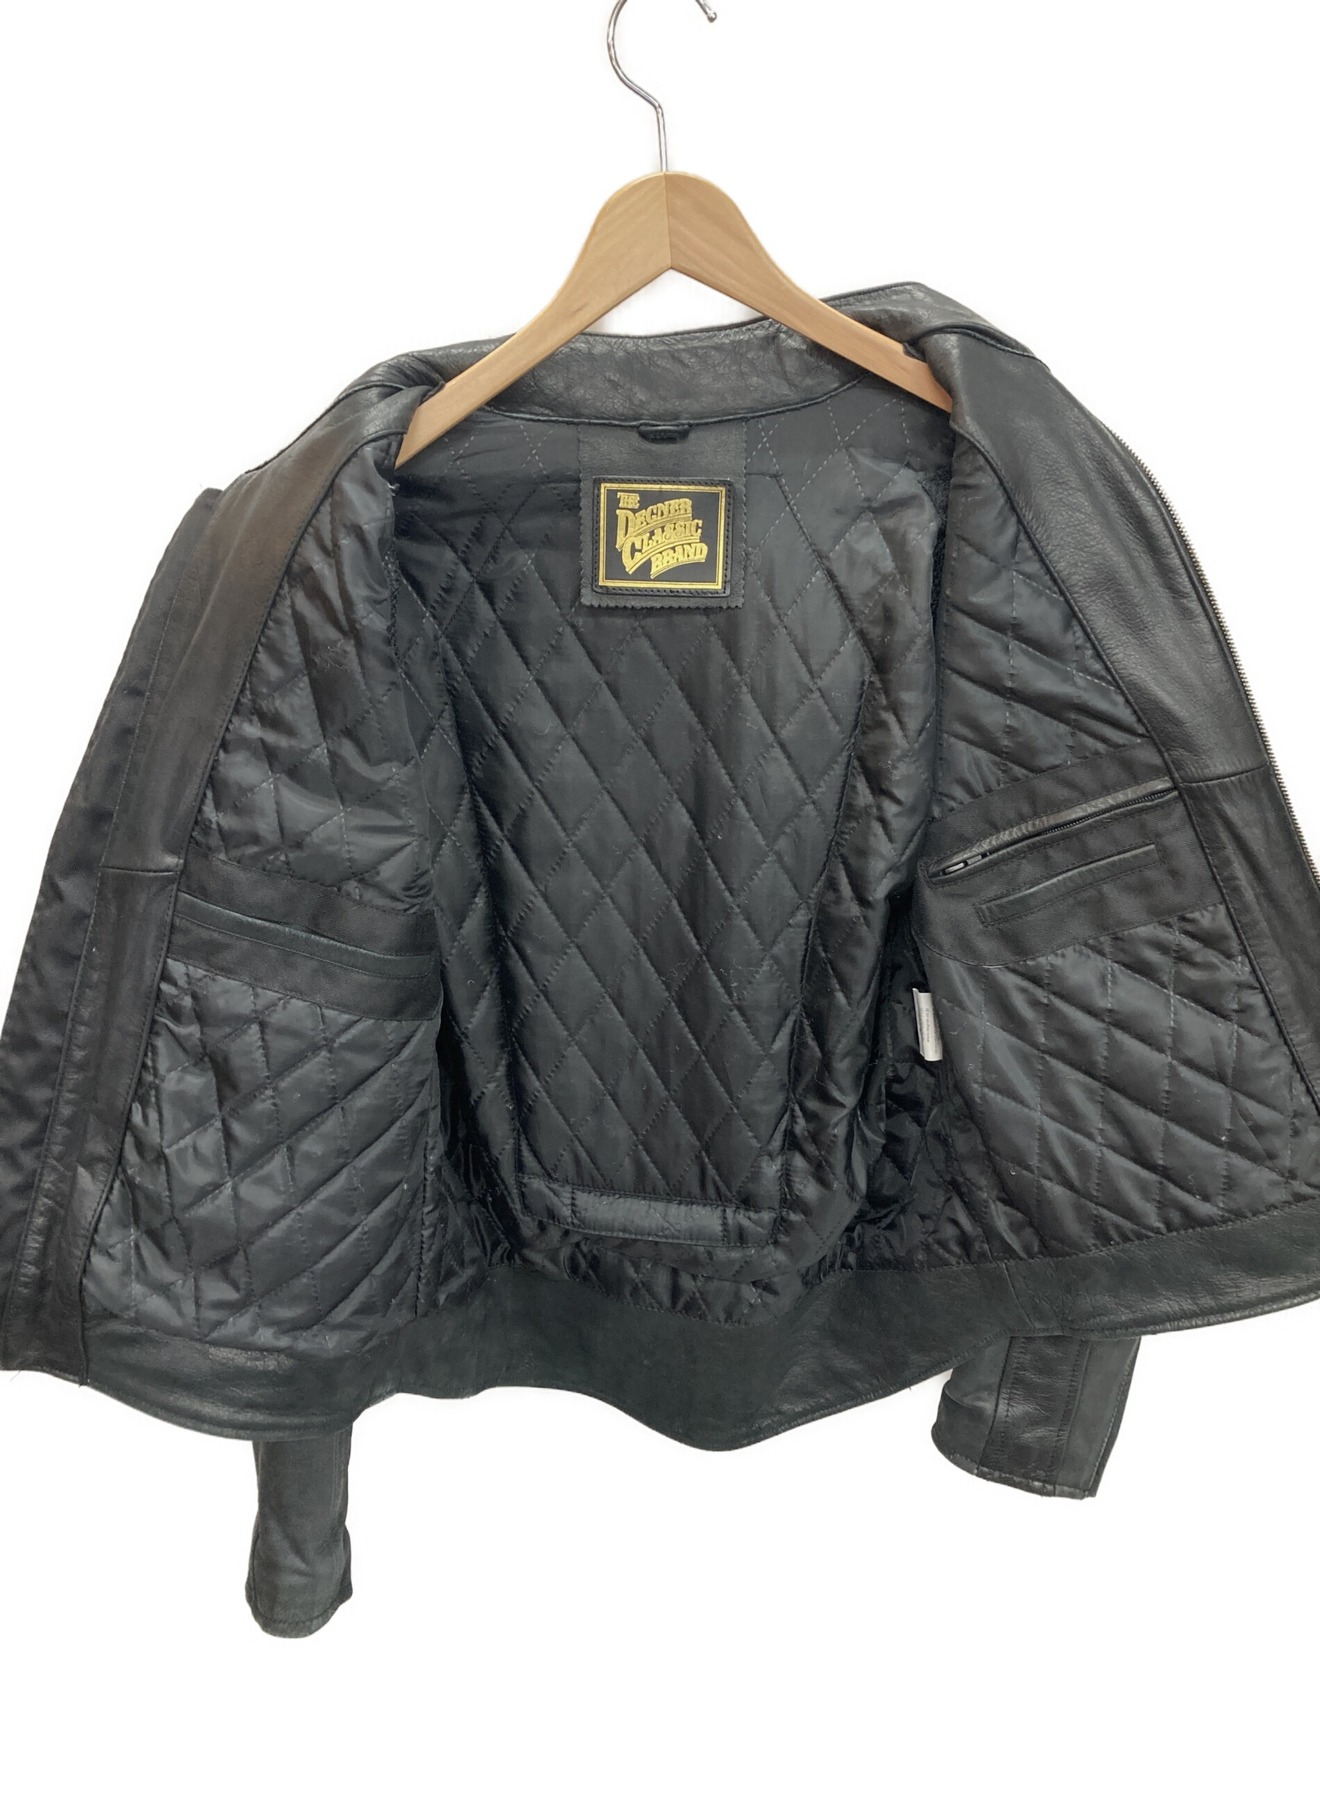 DEGNER CLASSIC BRAND (デグナー クラシック ブランド) レザーライダースジャケット ブラック サイズ:L